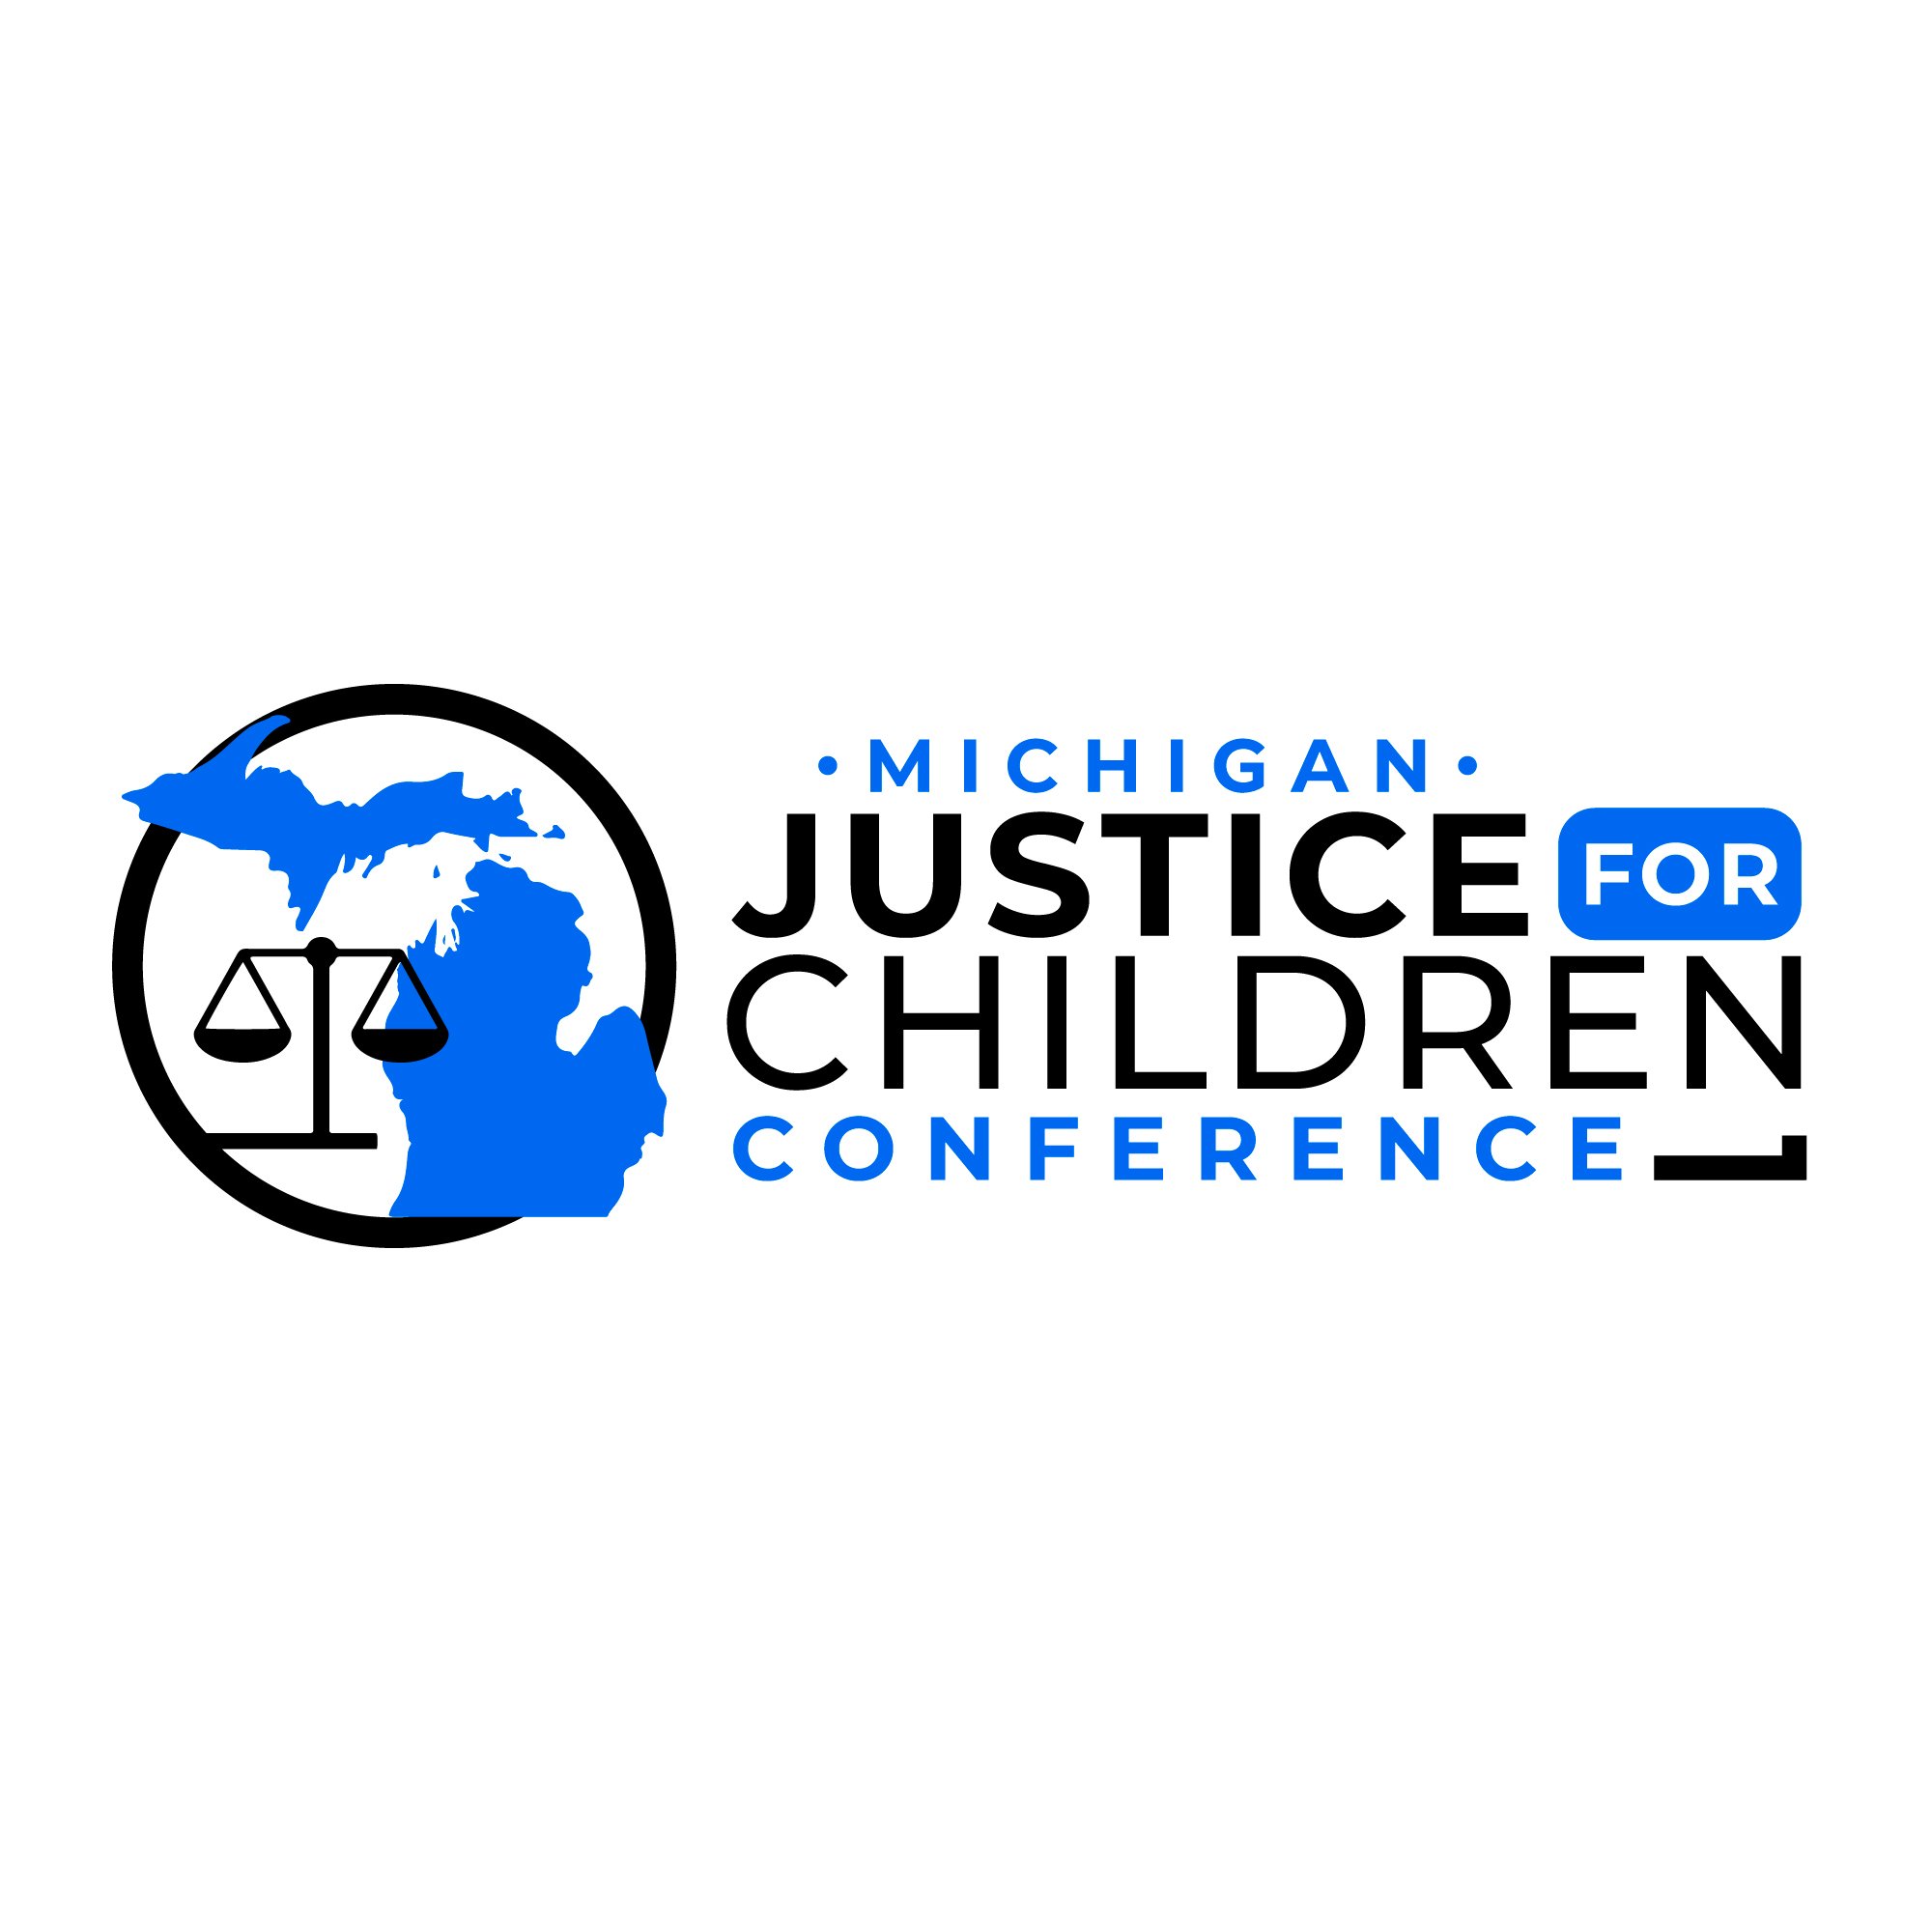 Justice-For-Children-Conference-Logo-drafts-v6.jpg